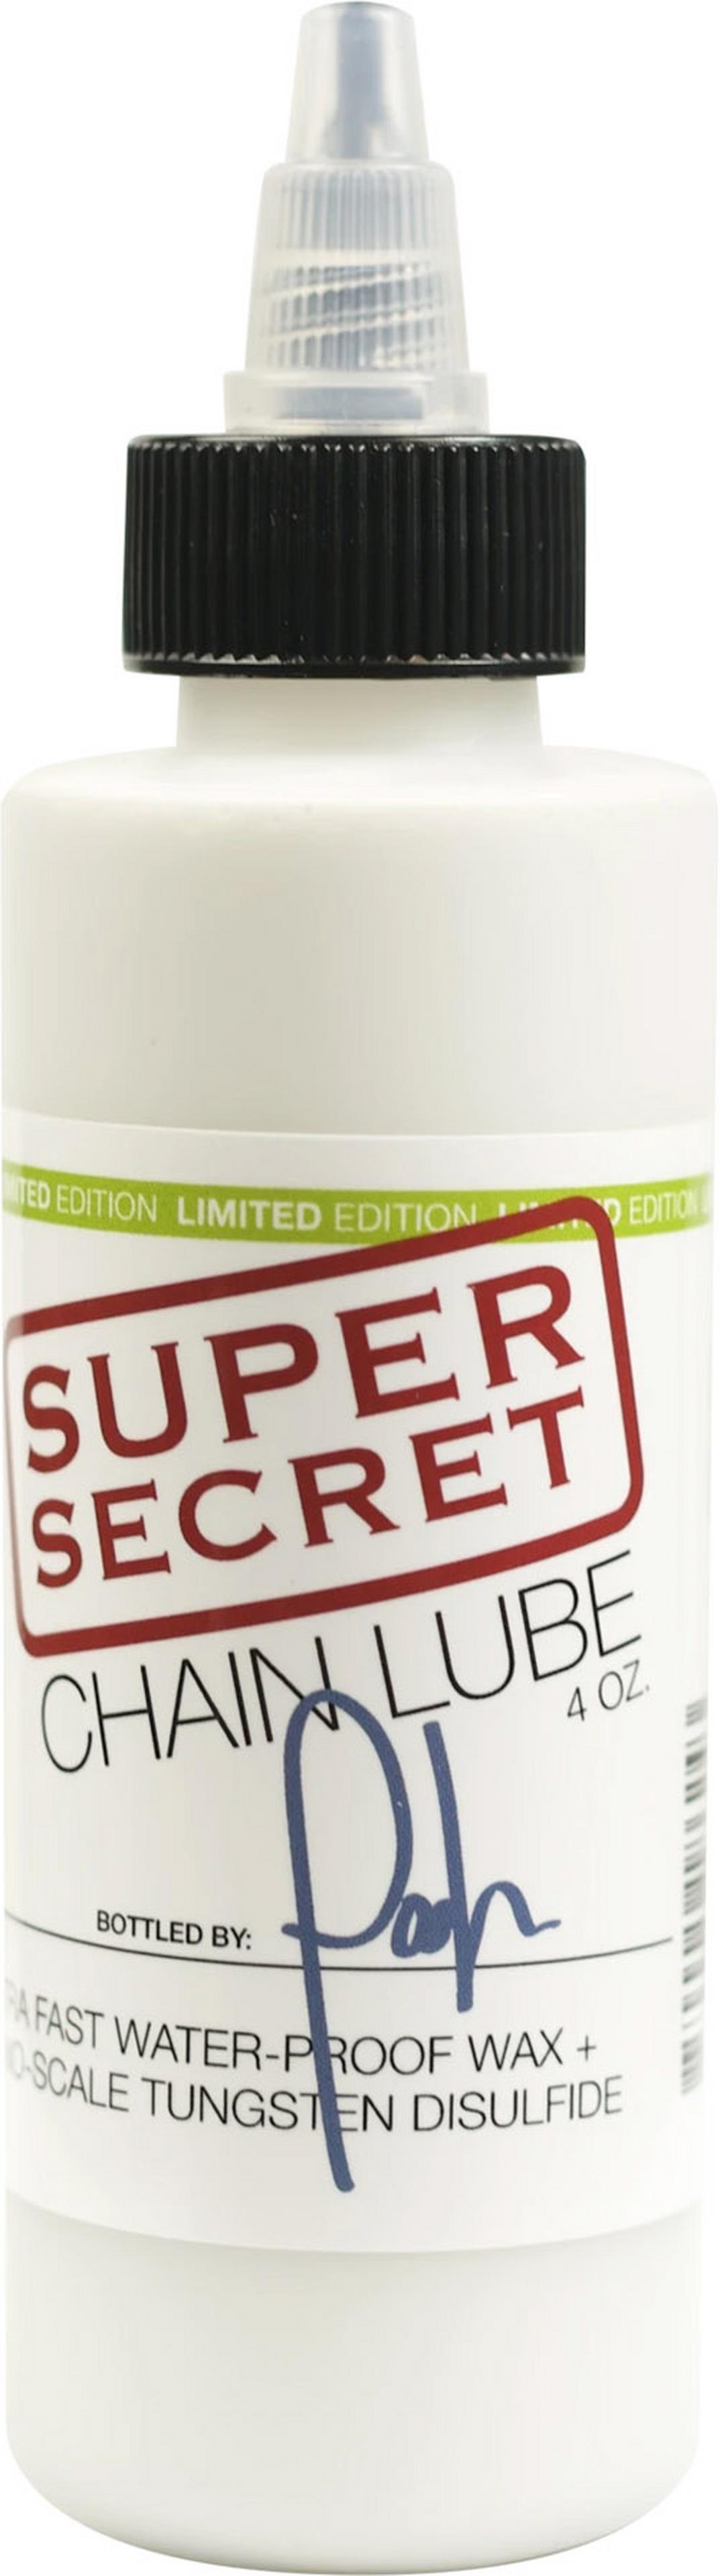 Review: Silca Super Secret Chain Lube